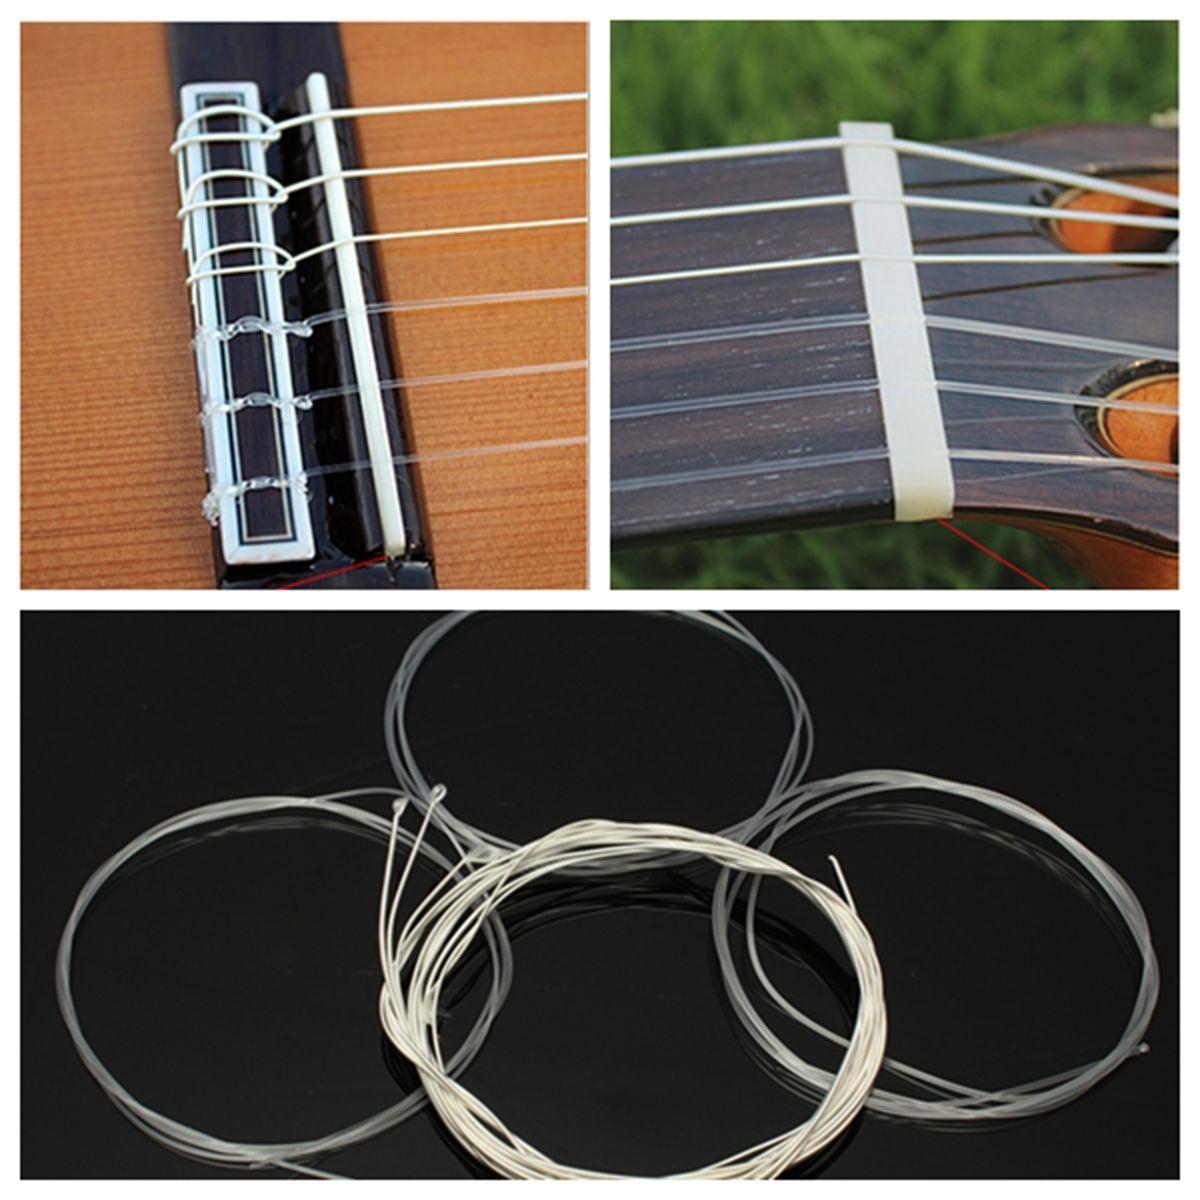 Jeu de cordes en nylon transparent et argenté pour guitare classique 1M 1-6 EBGDAE et accessoires